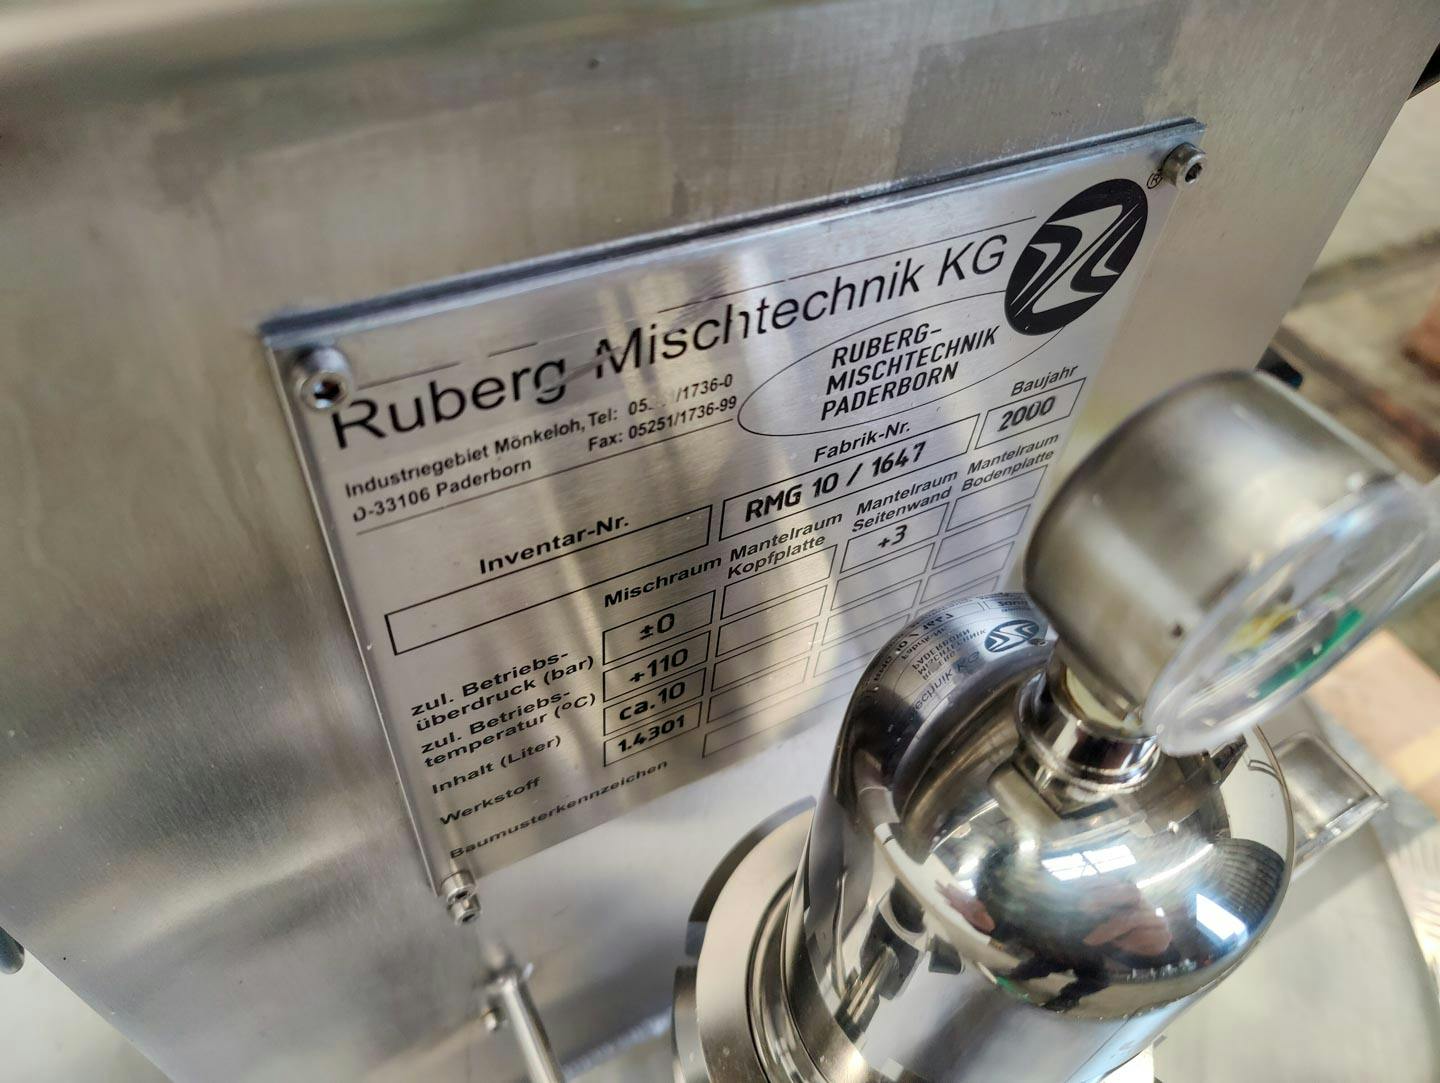 Ruberg Mischtechnik KG RMG 10/1647 - Misturador de pás - image 11